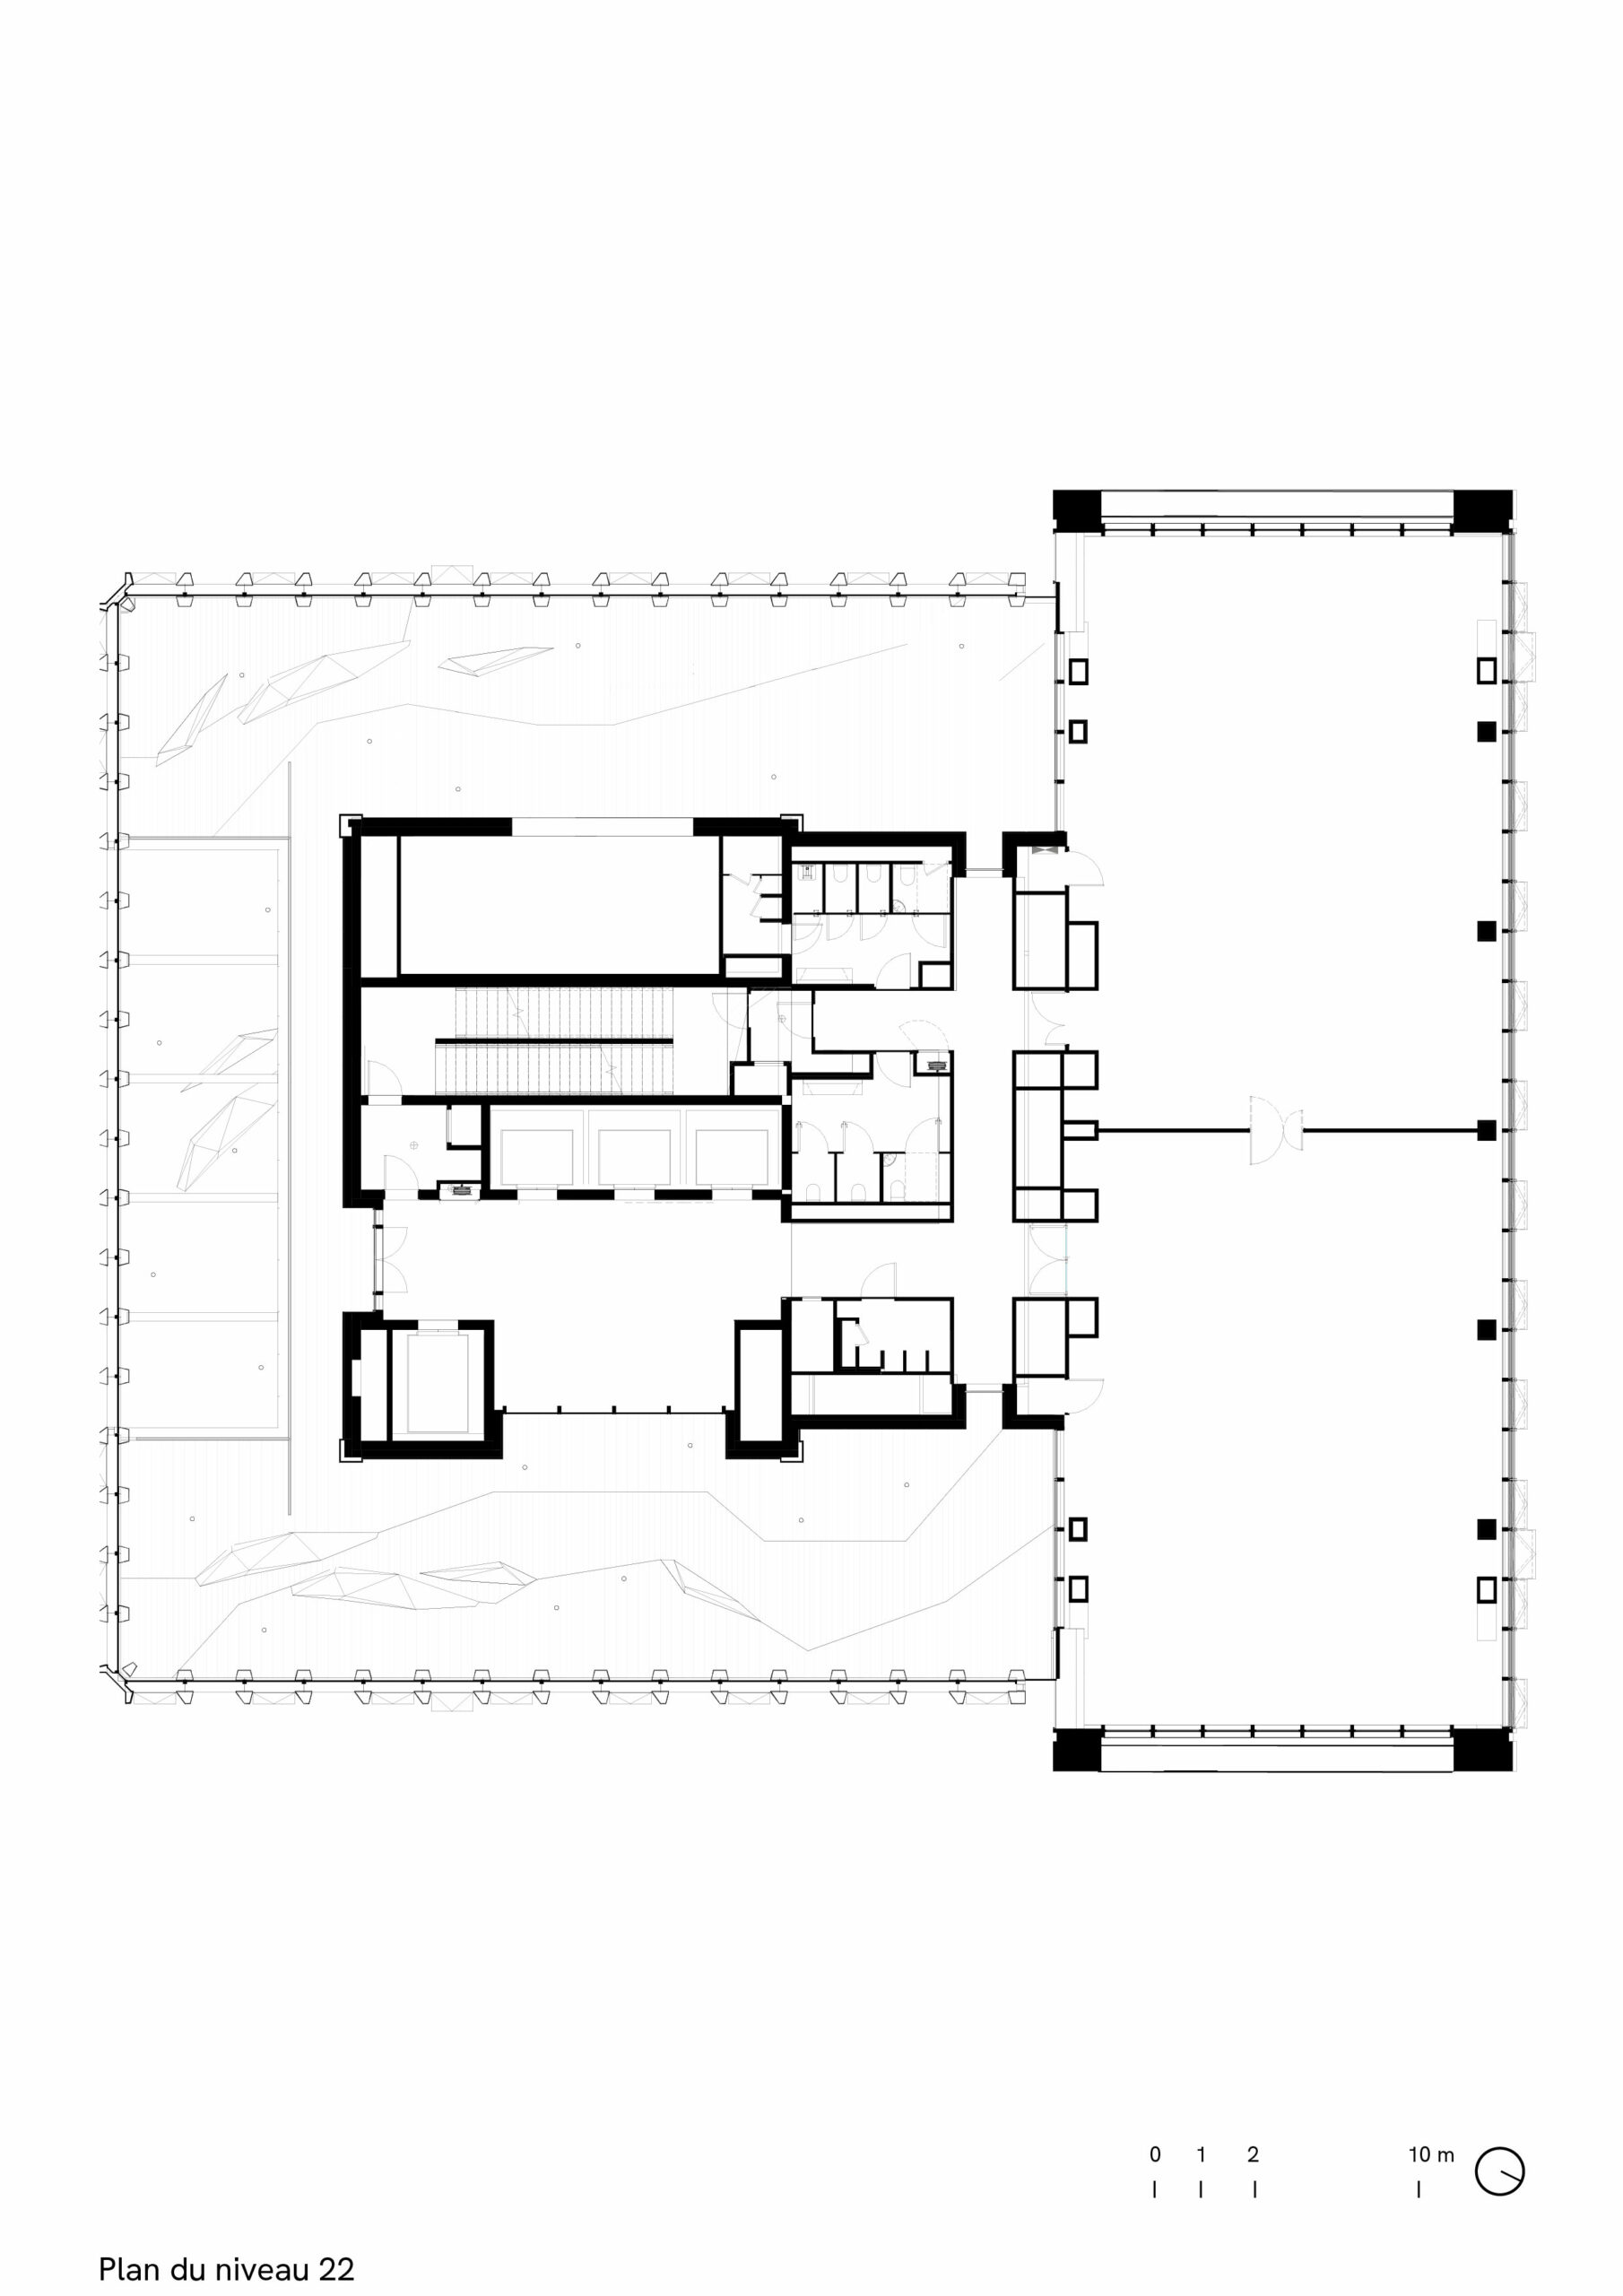 Silex2, Lyon, blueprint level 22